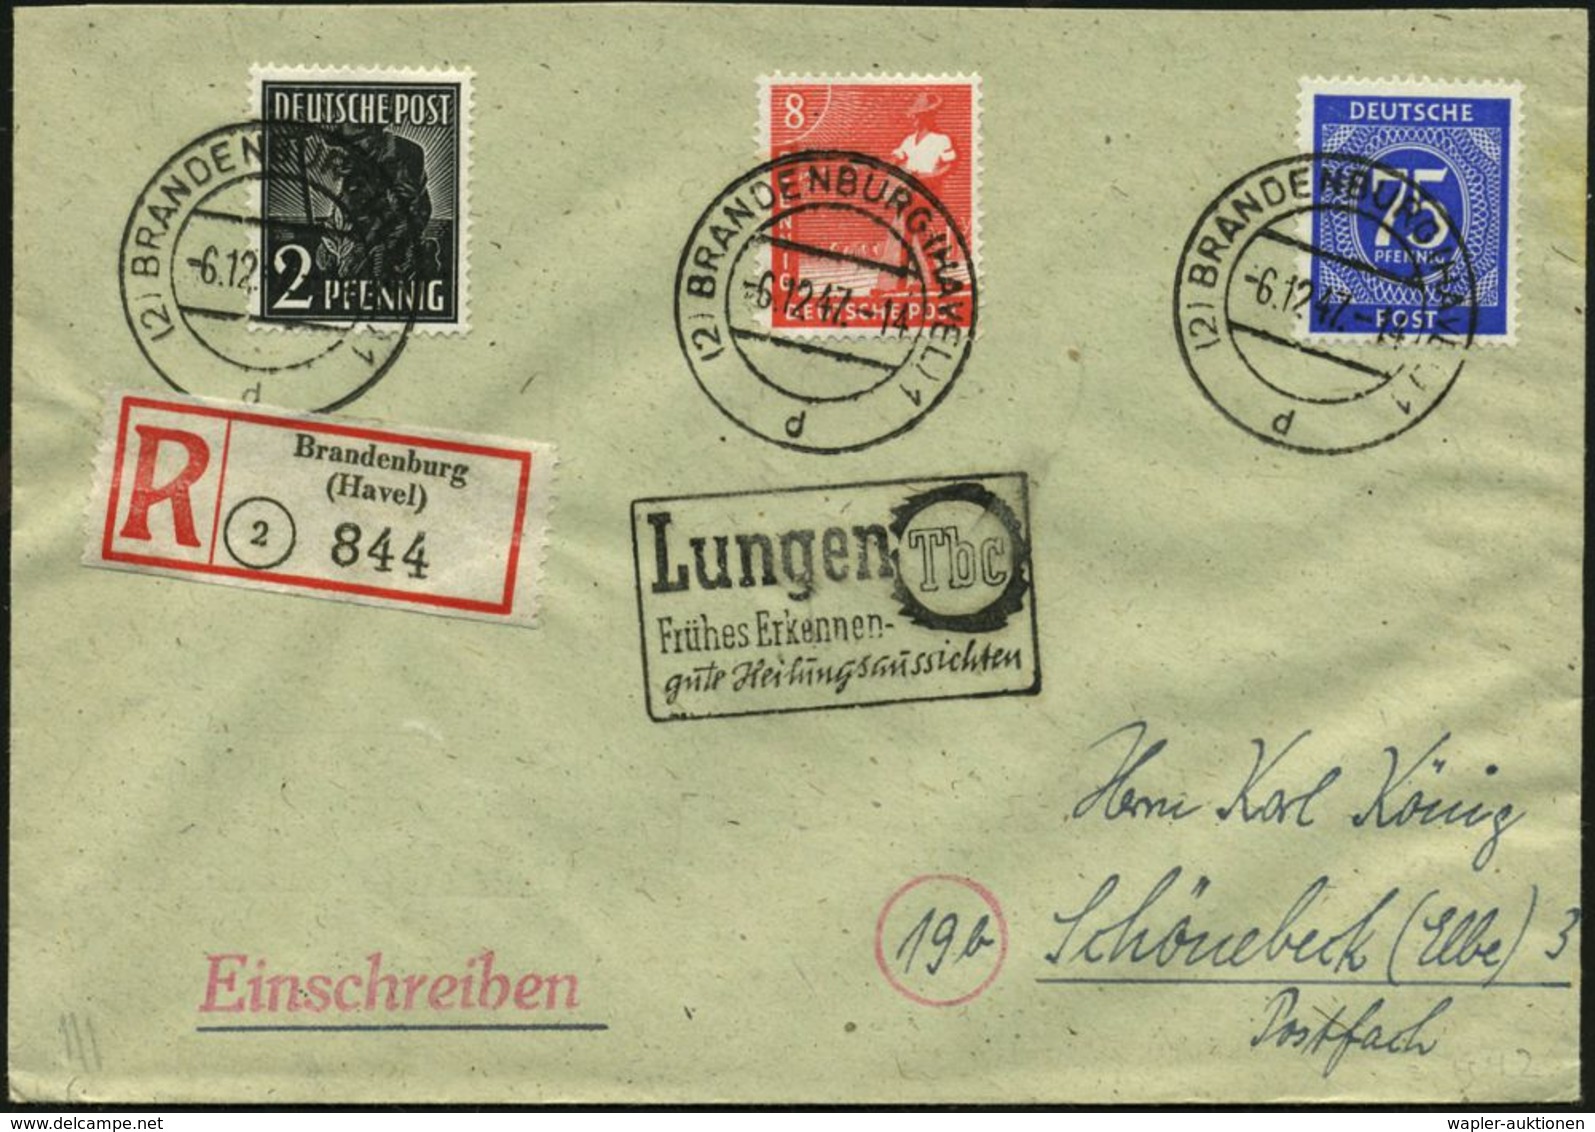 TUBERKULOSE / TBC-VORSORGE : (2) BRANDENBURG (HAVEL) 1/ D 1947 (6.12.) 2K-Steg + Sehr Seltener Hand-SerienSt (Ra.3): Lun - Krankheiten